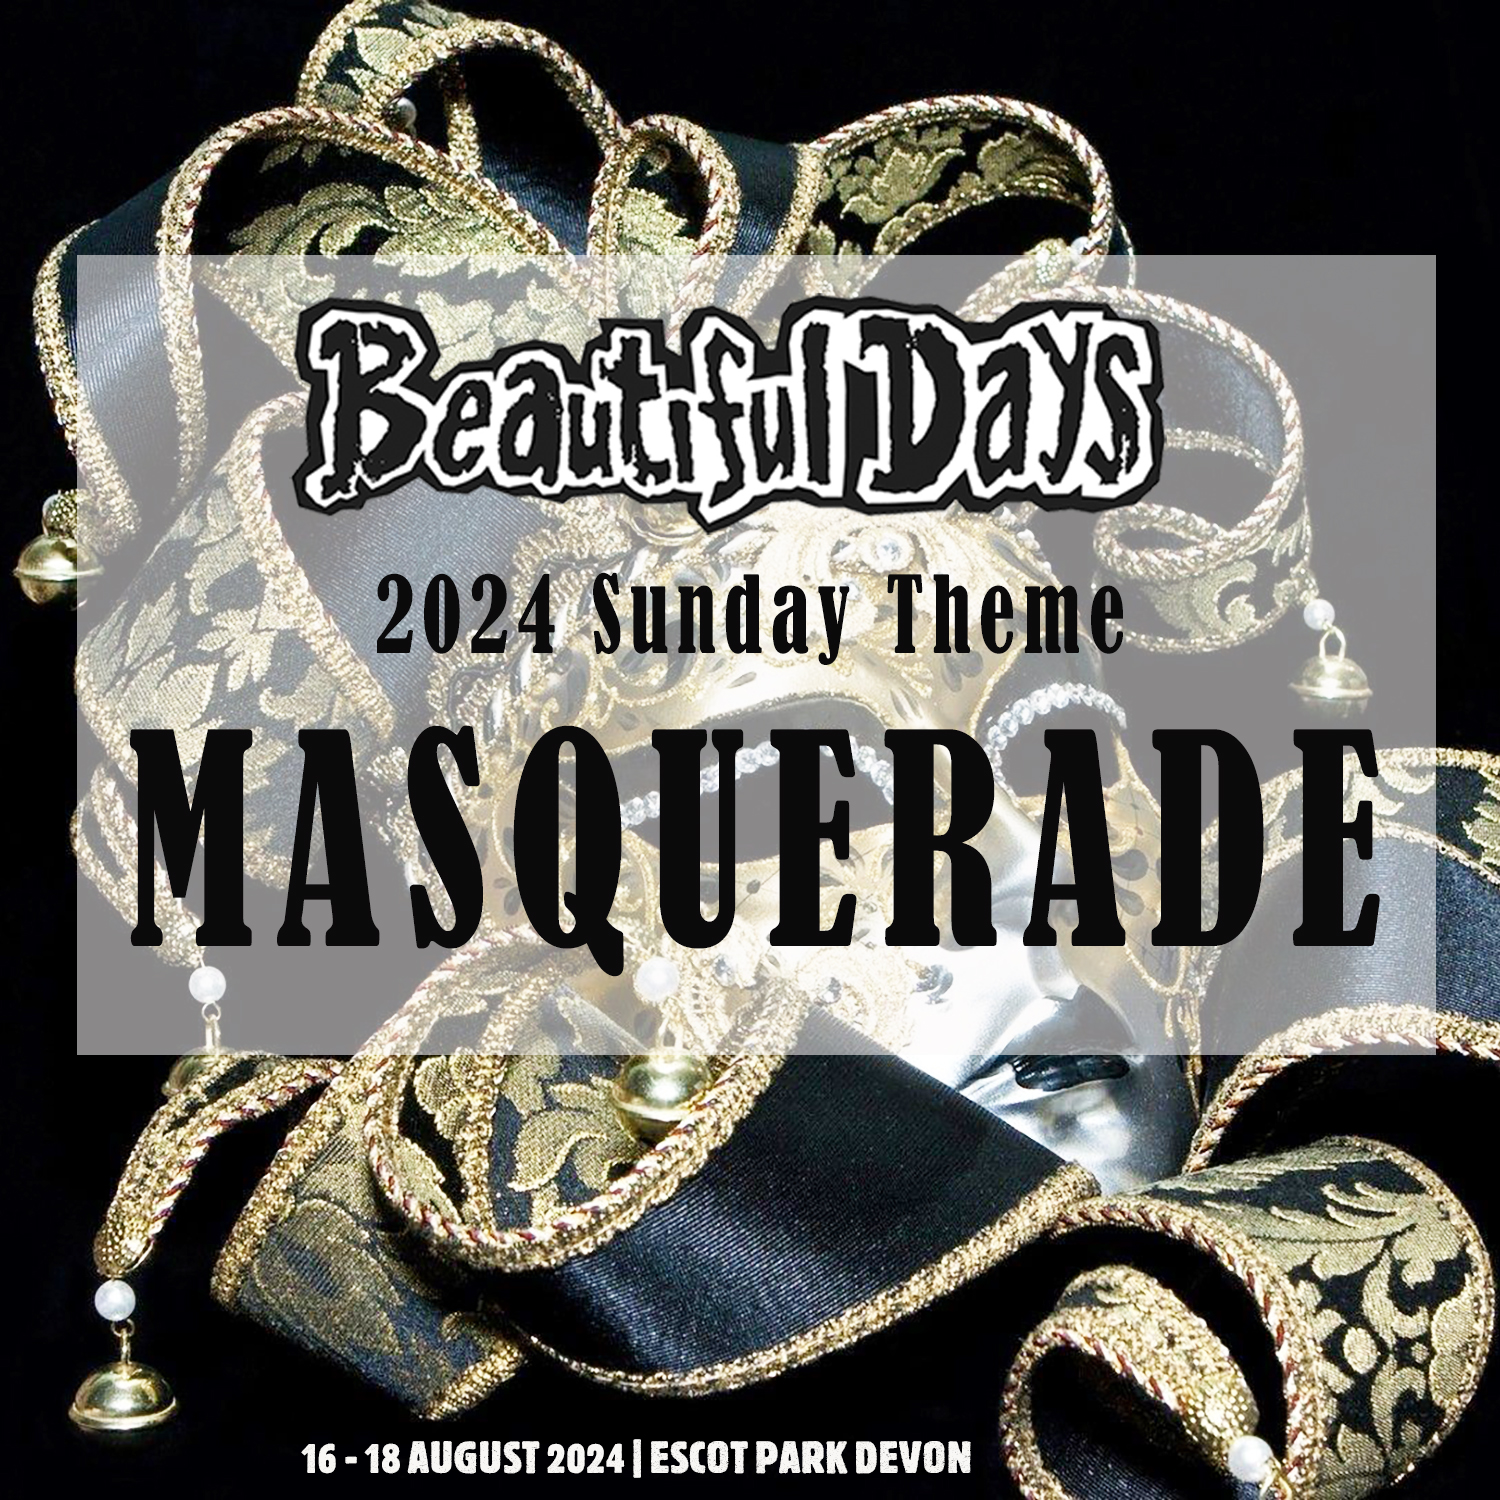 Masquerade theme